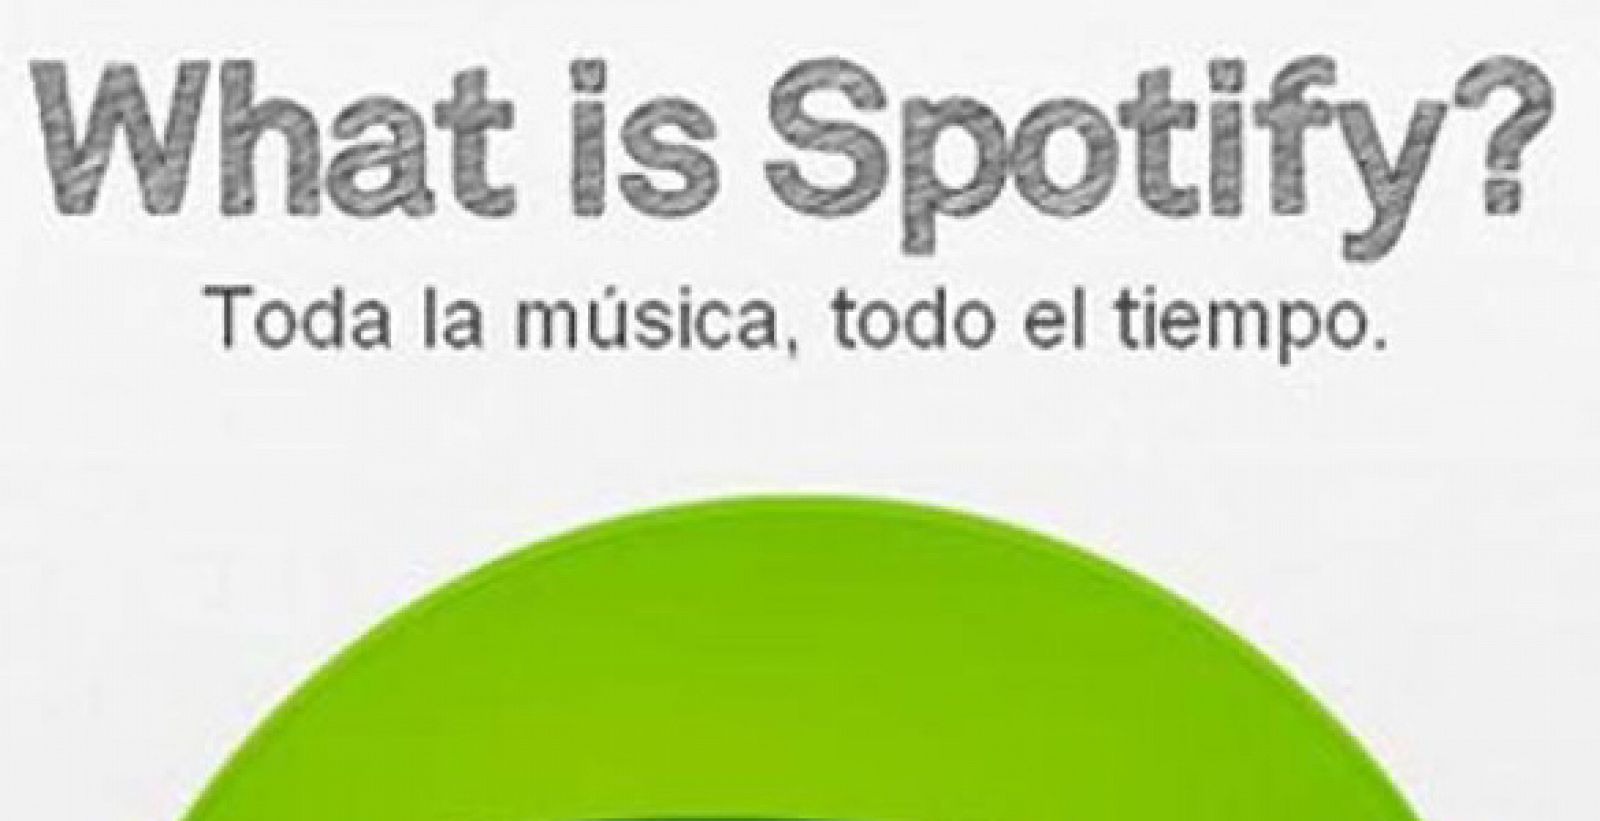 El servicio de música en 'streaming' Spotify ya está disponible en Estados Unidos